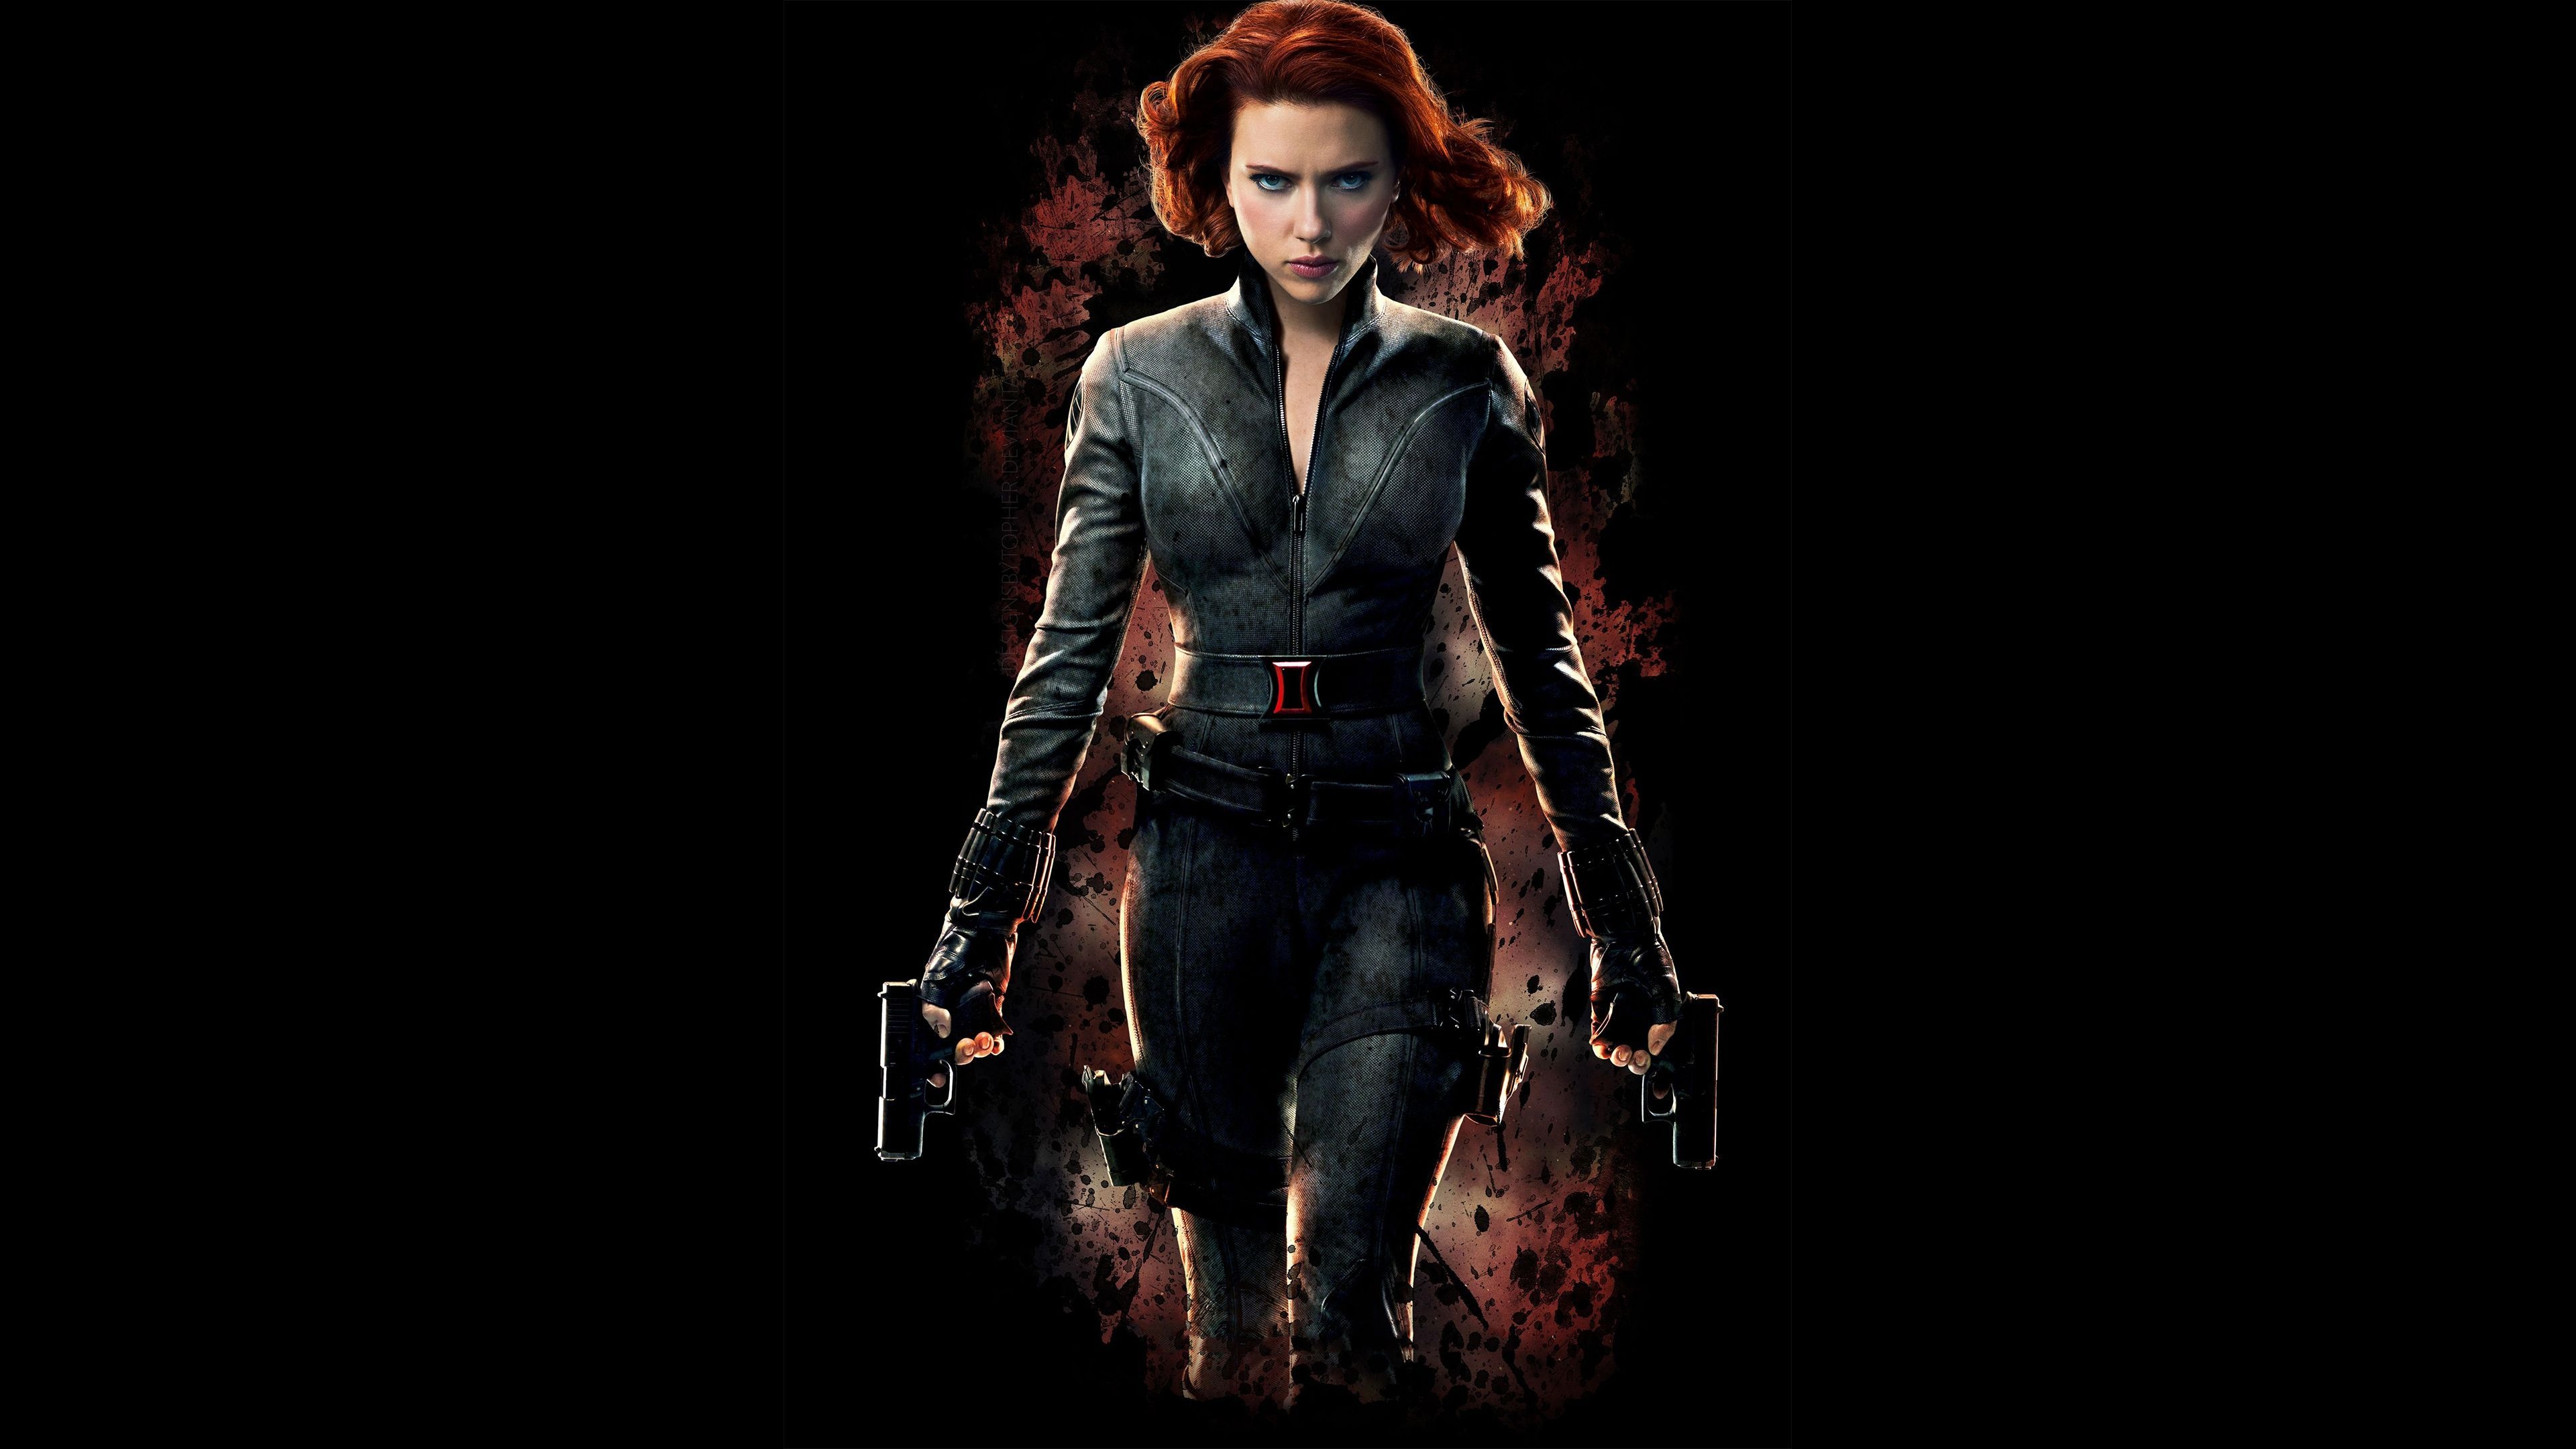 Black Widow, Striking computer wallpapers, Intriguing character portrayal, Fierce Avenger, 3840x2160 4K Desktop